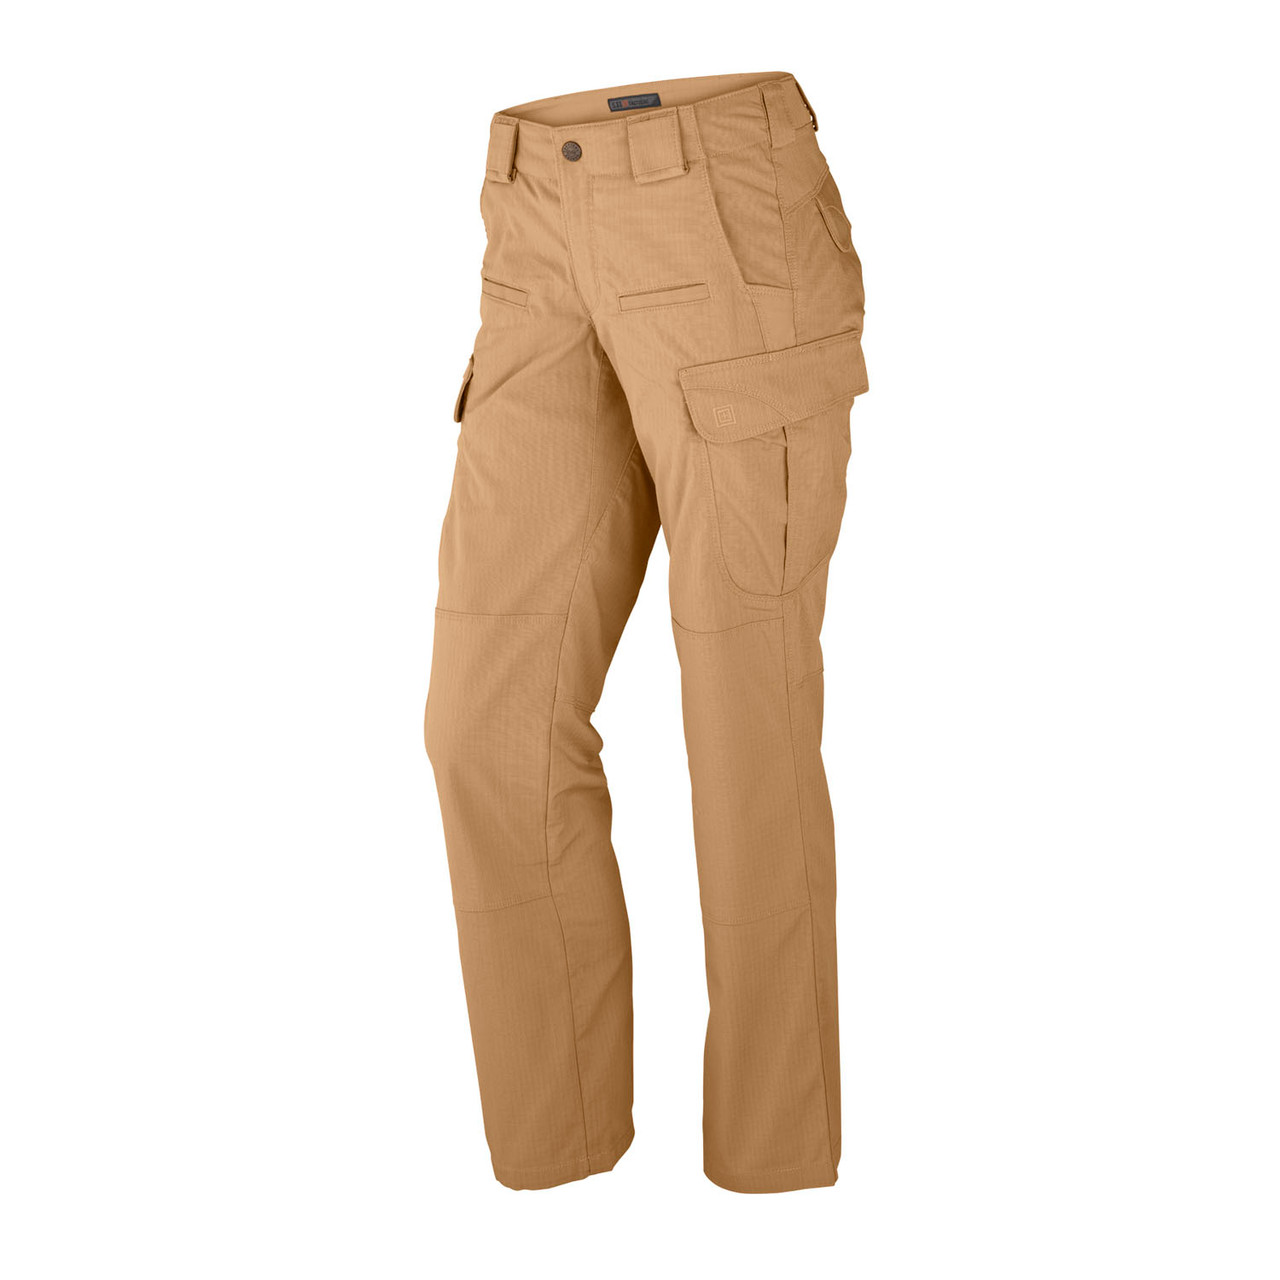 5.11 Tactical Check Cargo Pants | Mercari